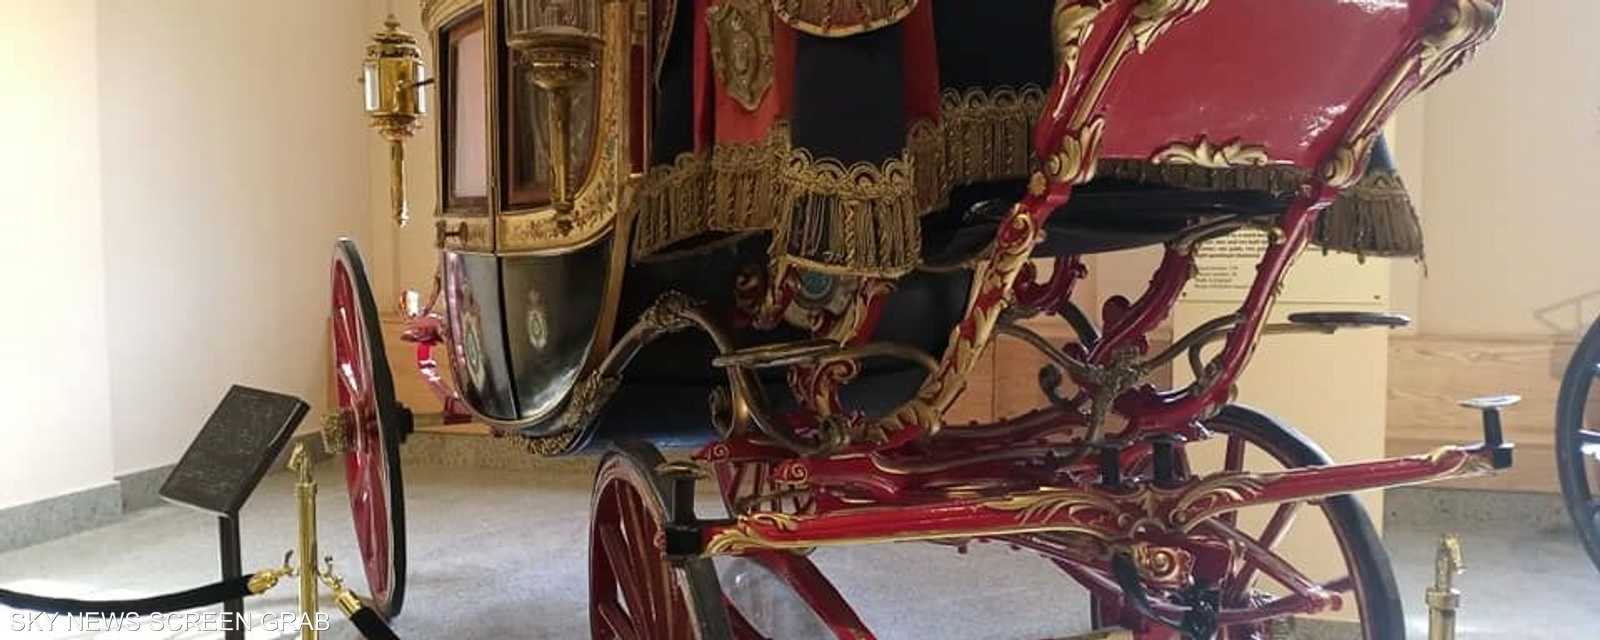 عربة الآلاي الكبرى.. هدية من الإمبراطورة أوجيني زوجة نابليون